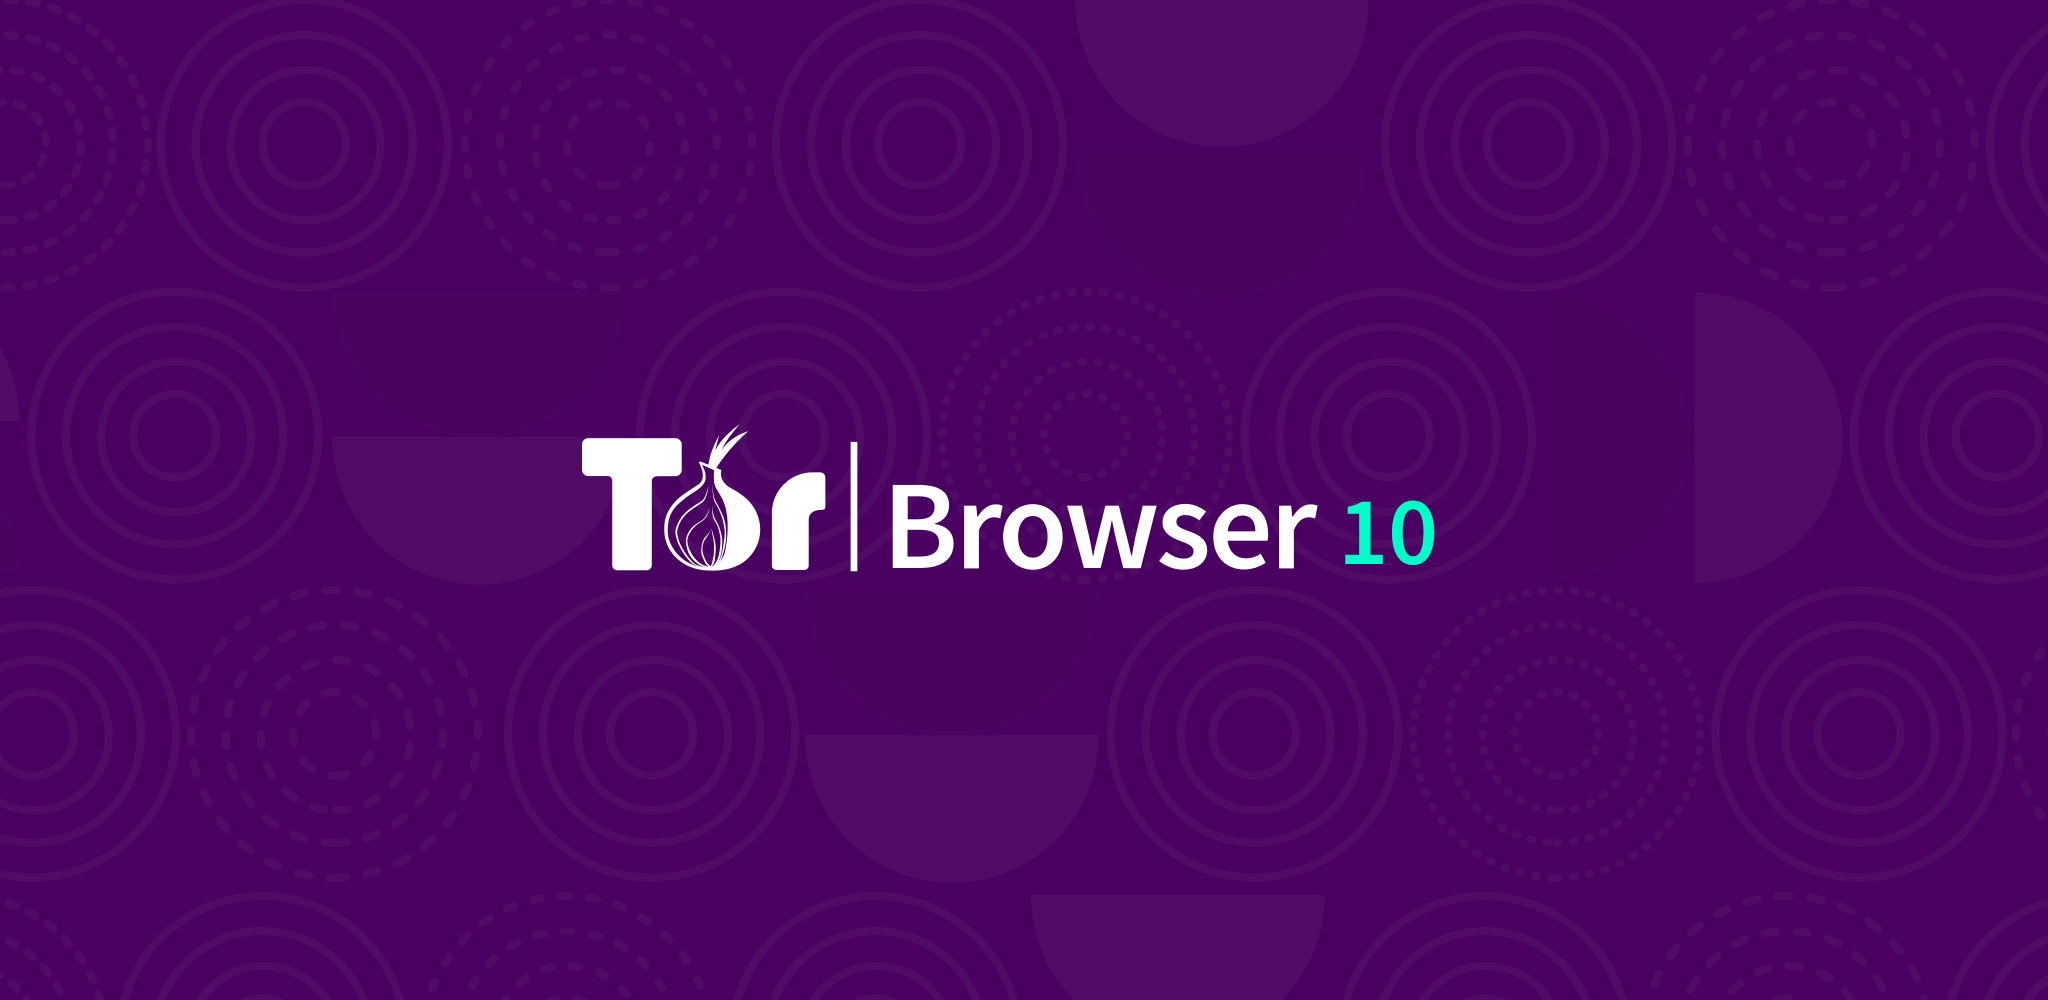 Tor browser по почте mega tor browser for linux fedora mega